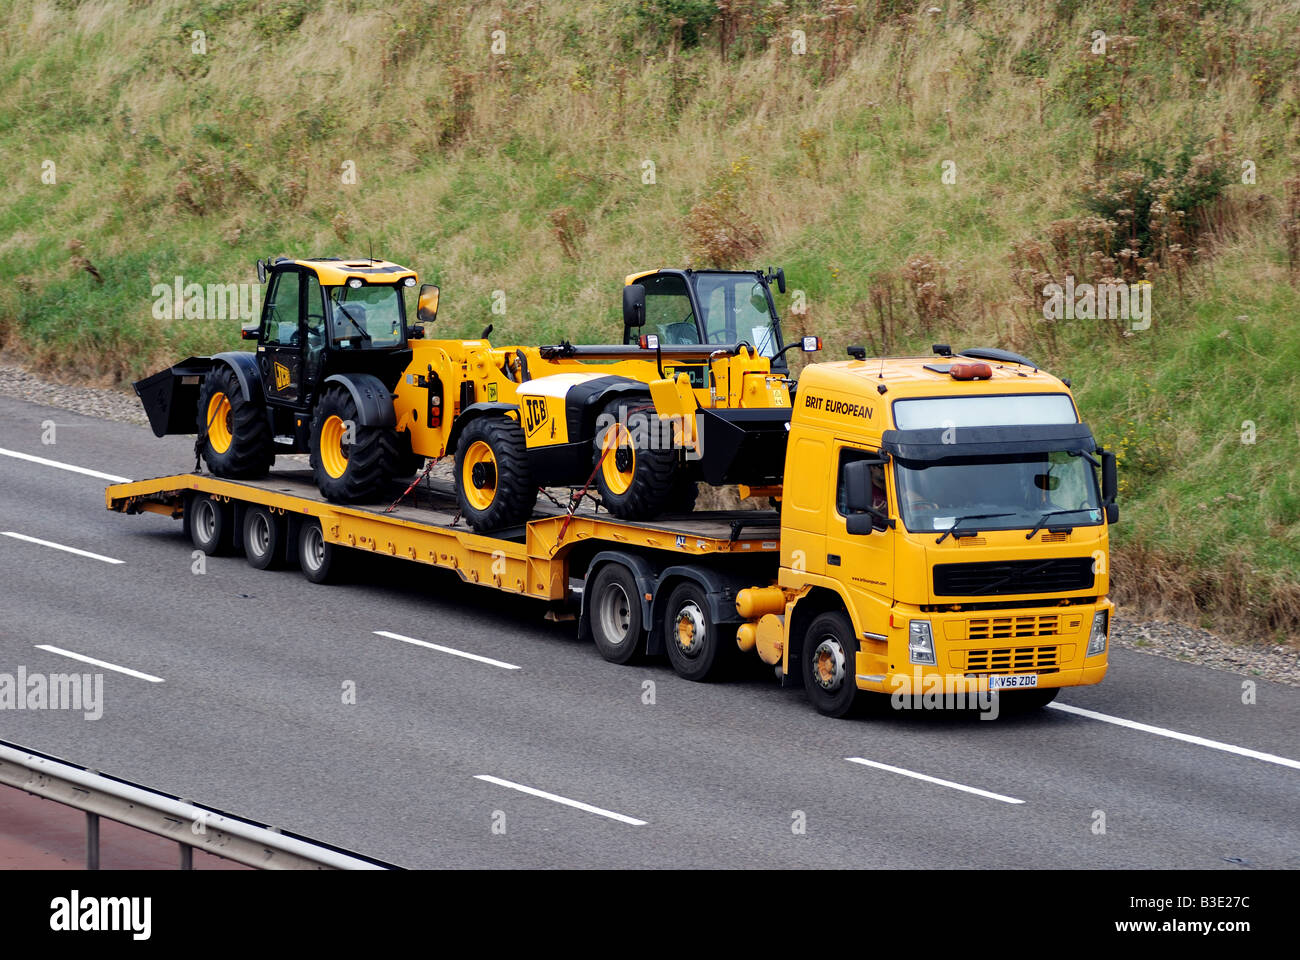 New JCB vehicles transported on M40 motorway England UK Stock Photo